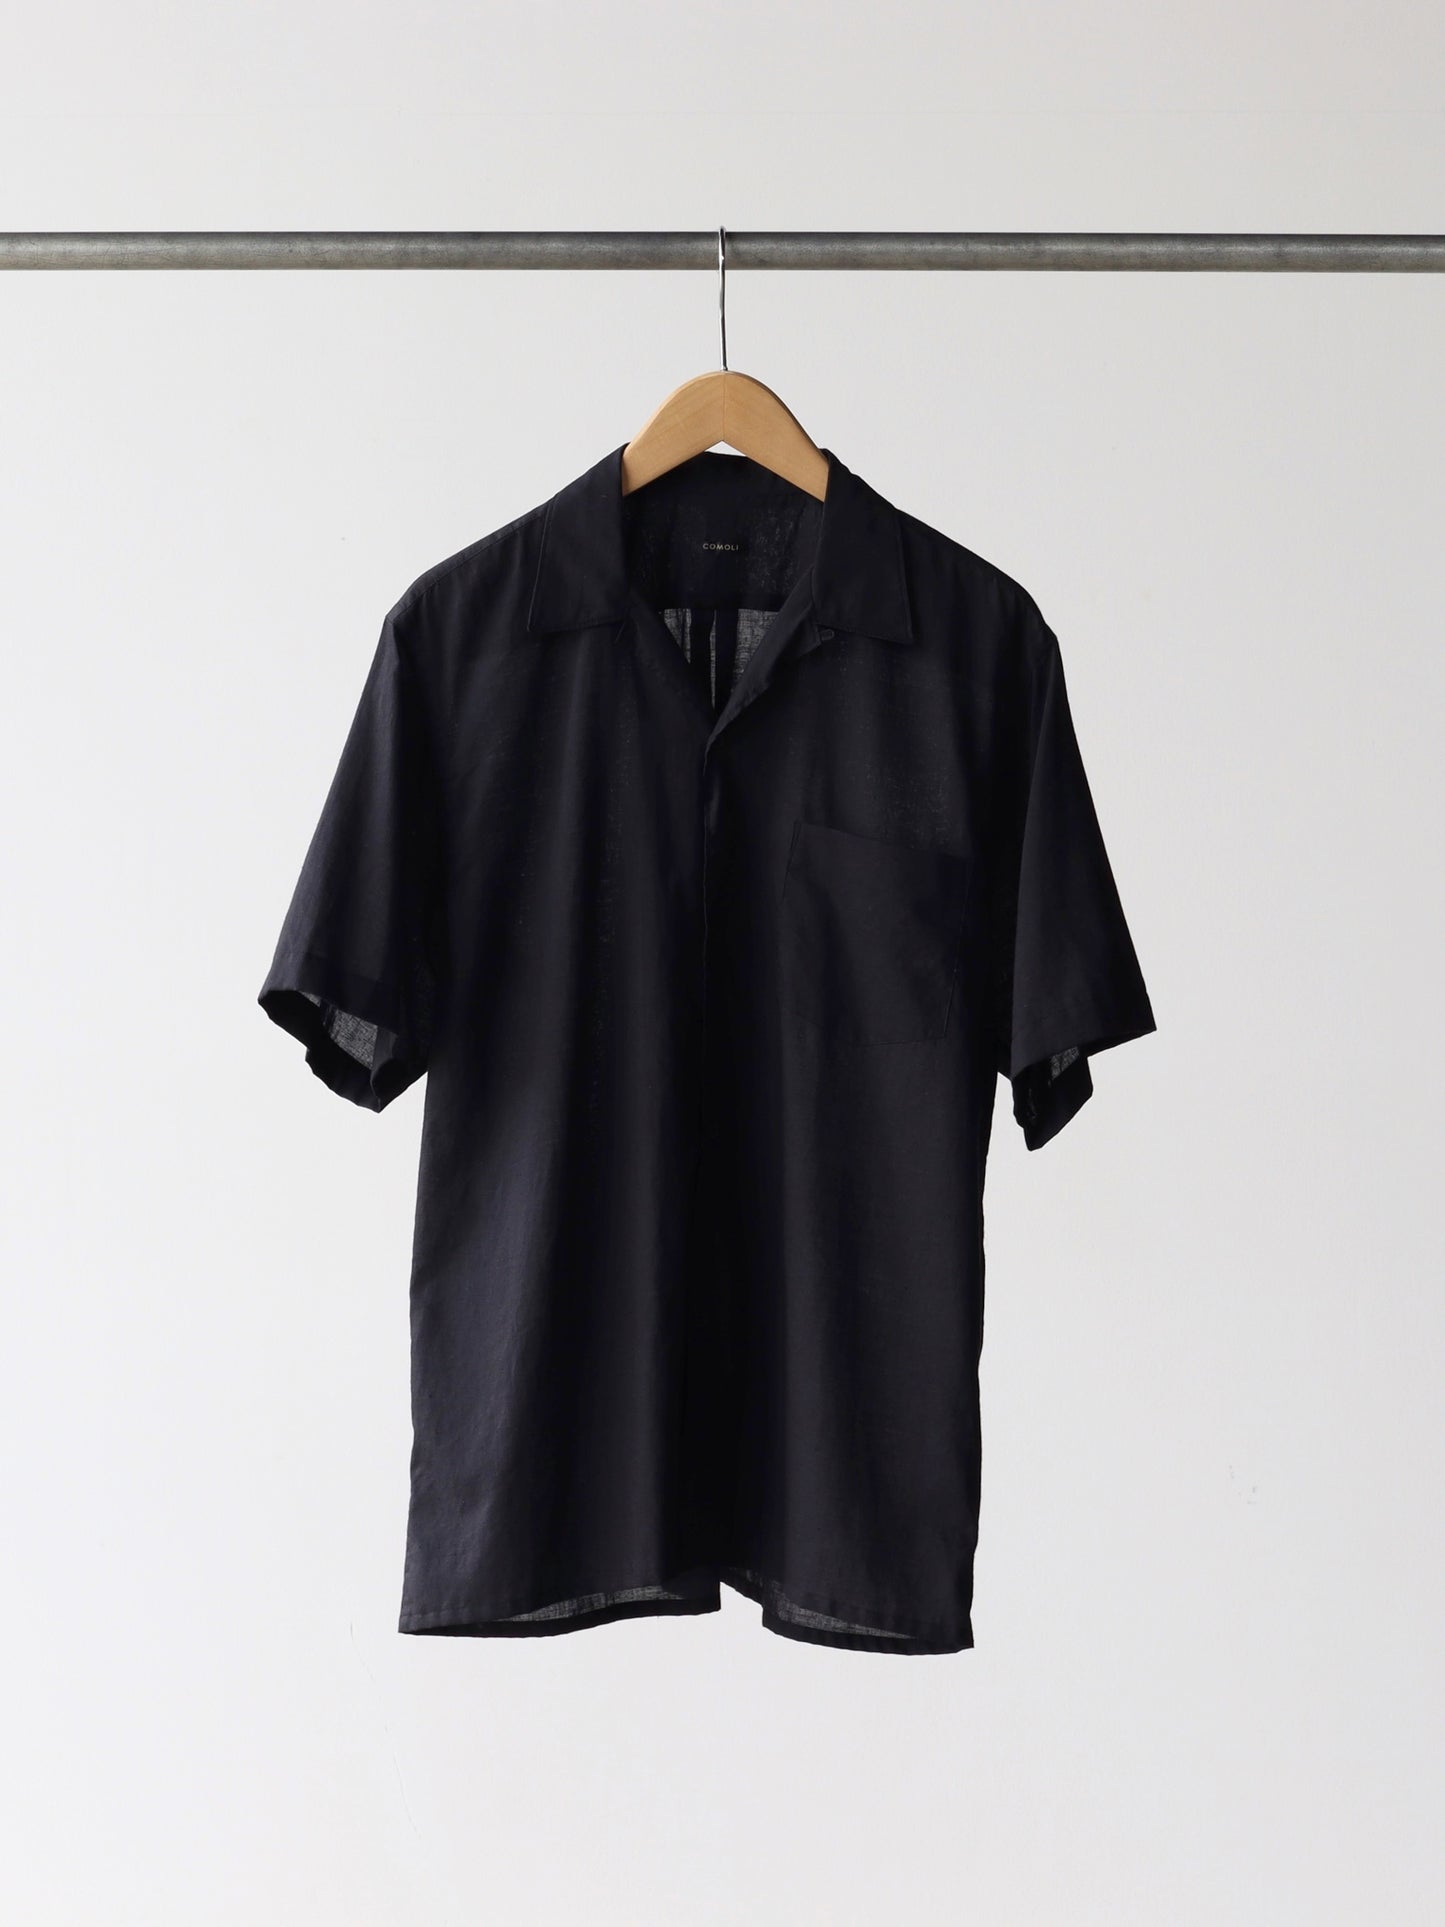 comoli-khadiコットン半袖-オープンカラーシャツ-black-1